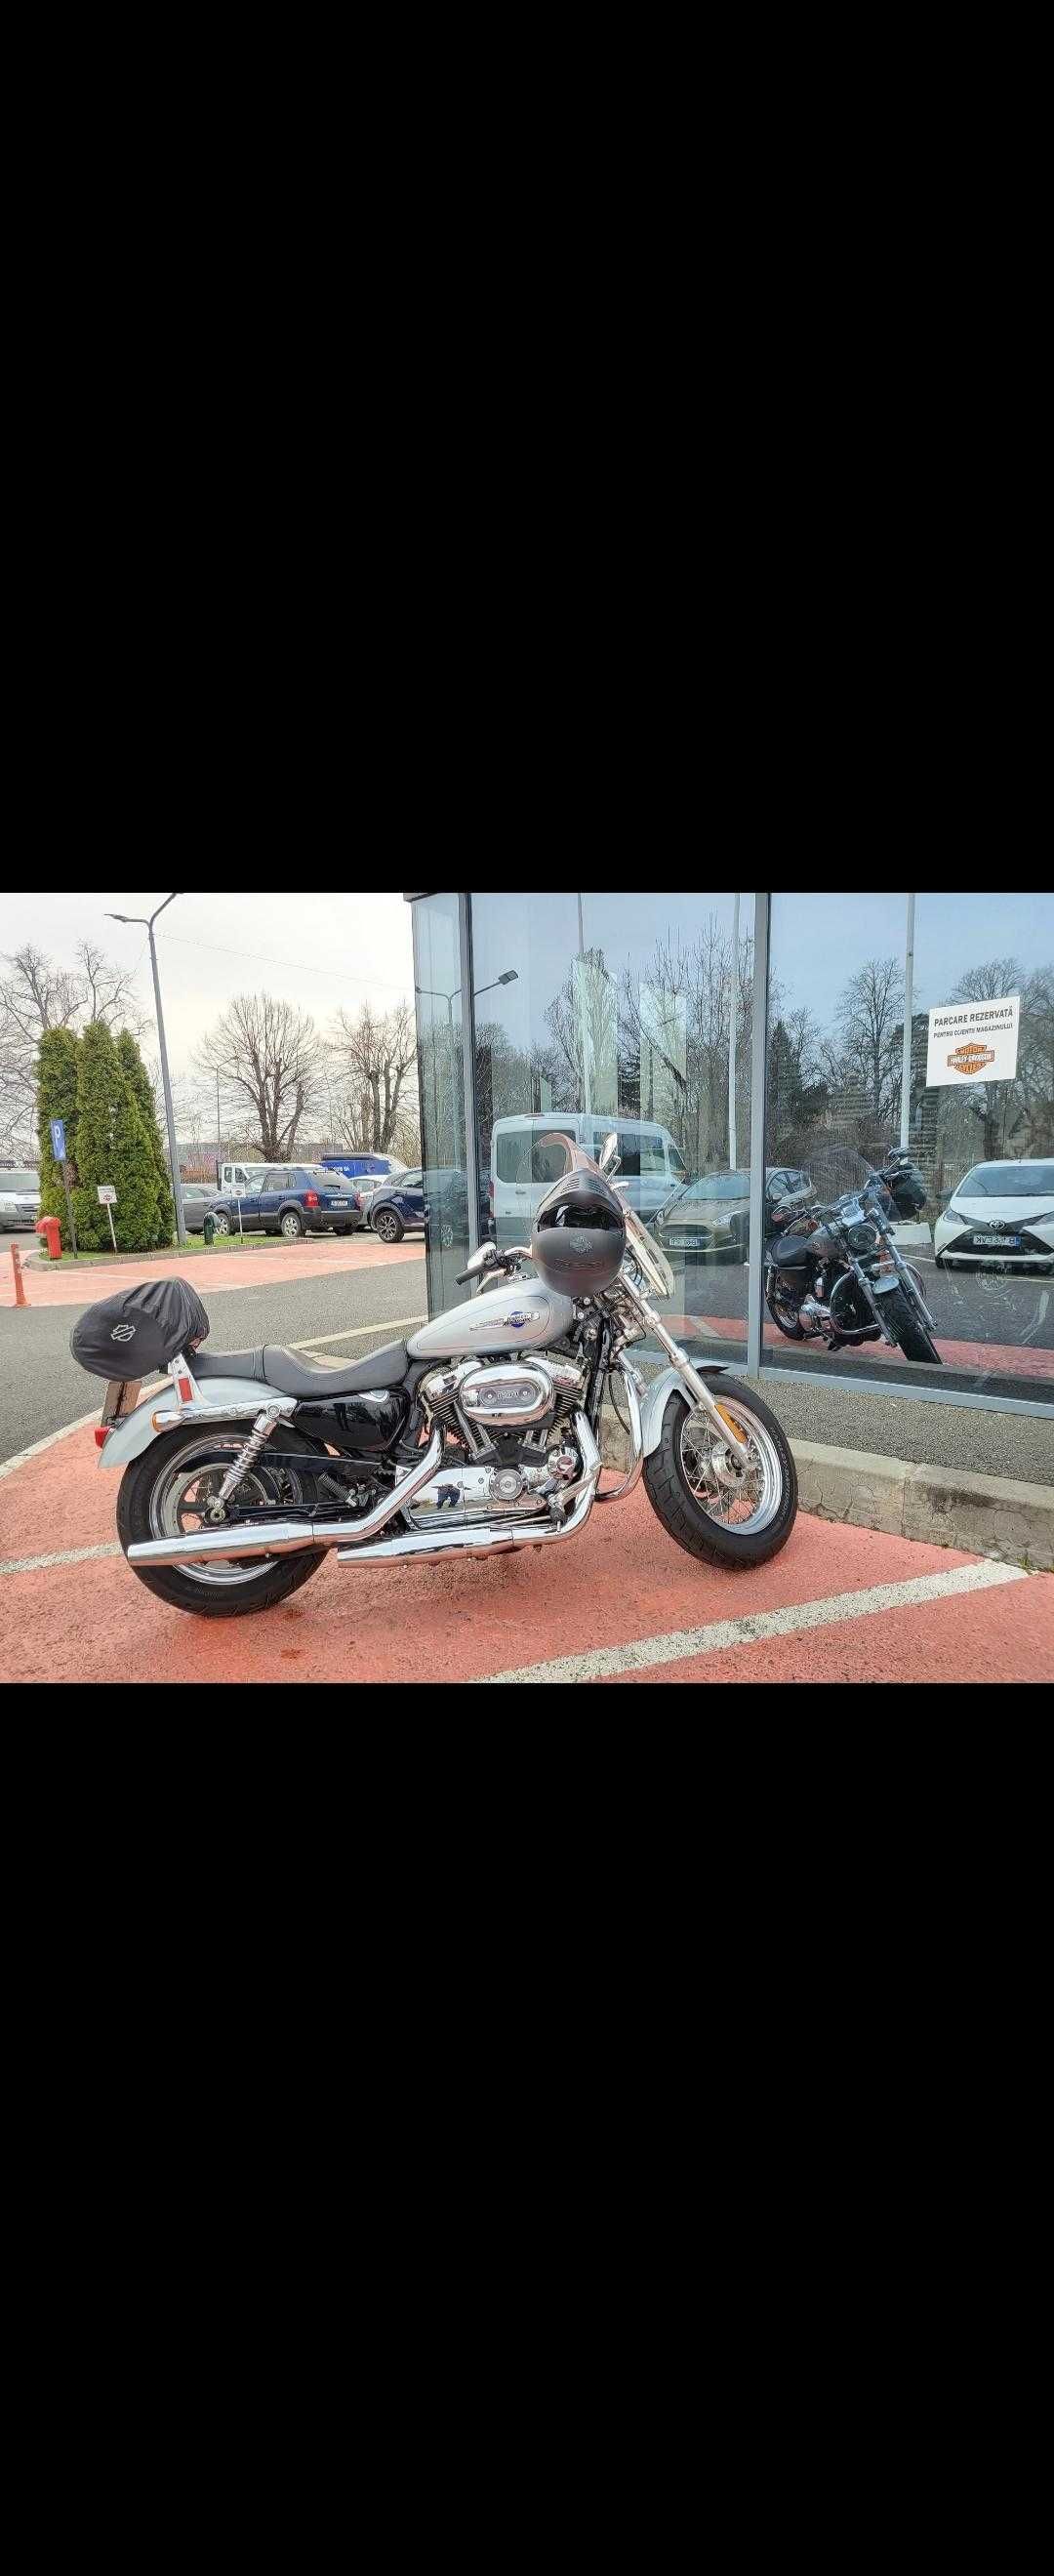 Vand motocicleta Harley Davidson Custom Sporster cu 14.600 km la bord